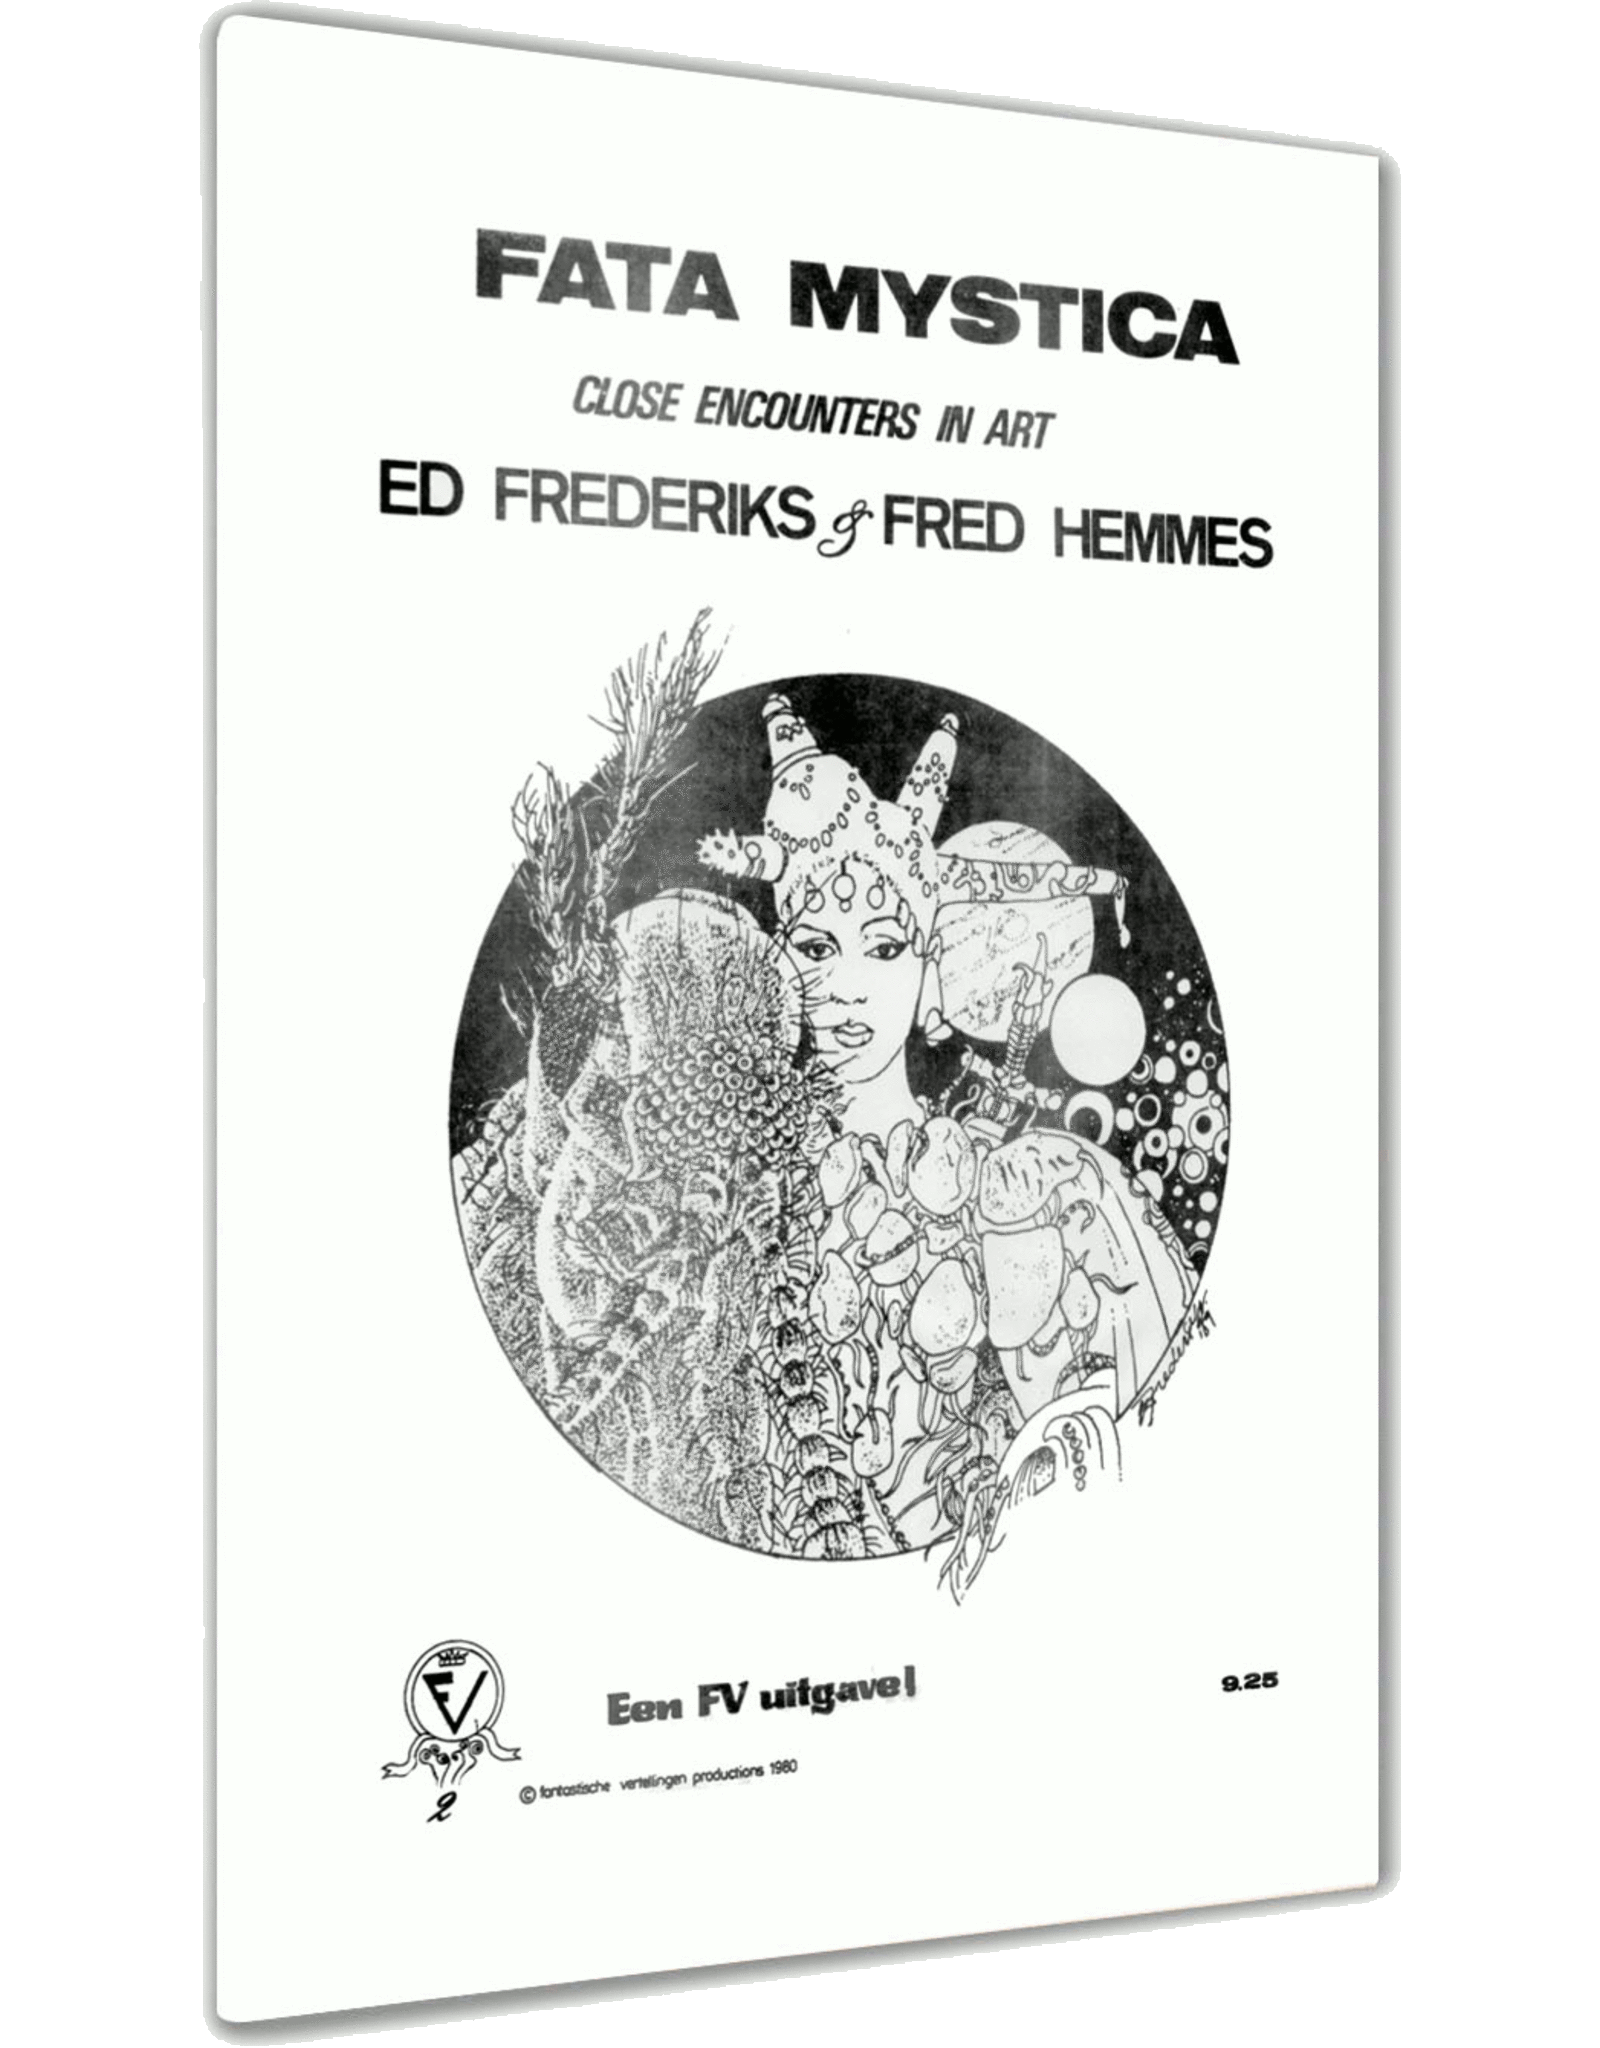 Fata Mystica – Close Encounters in Art